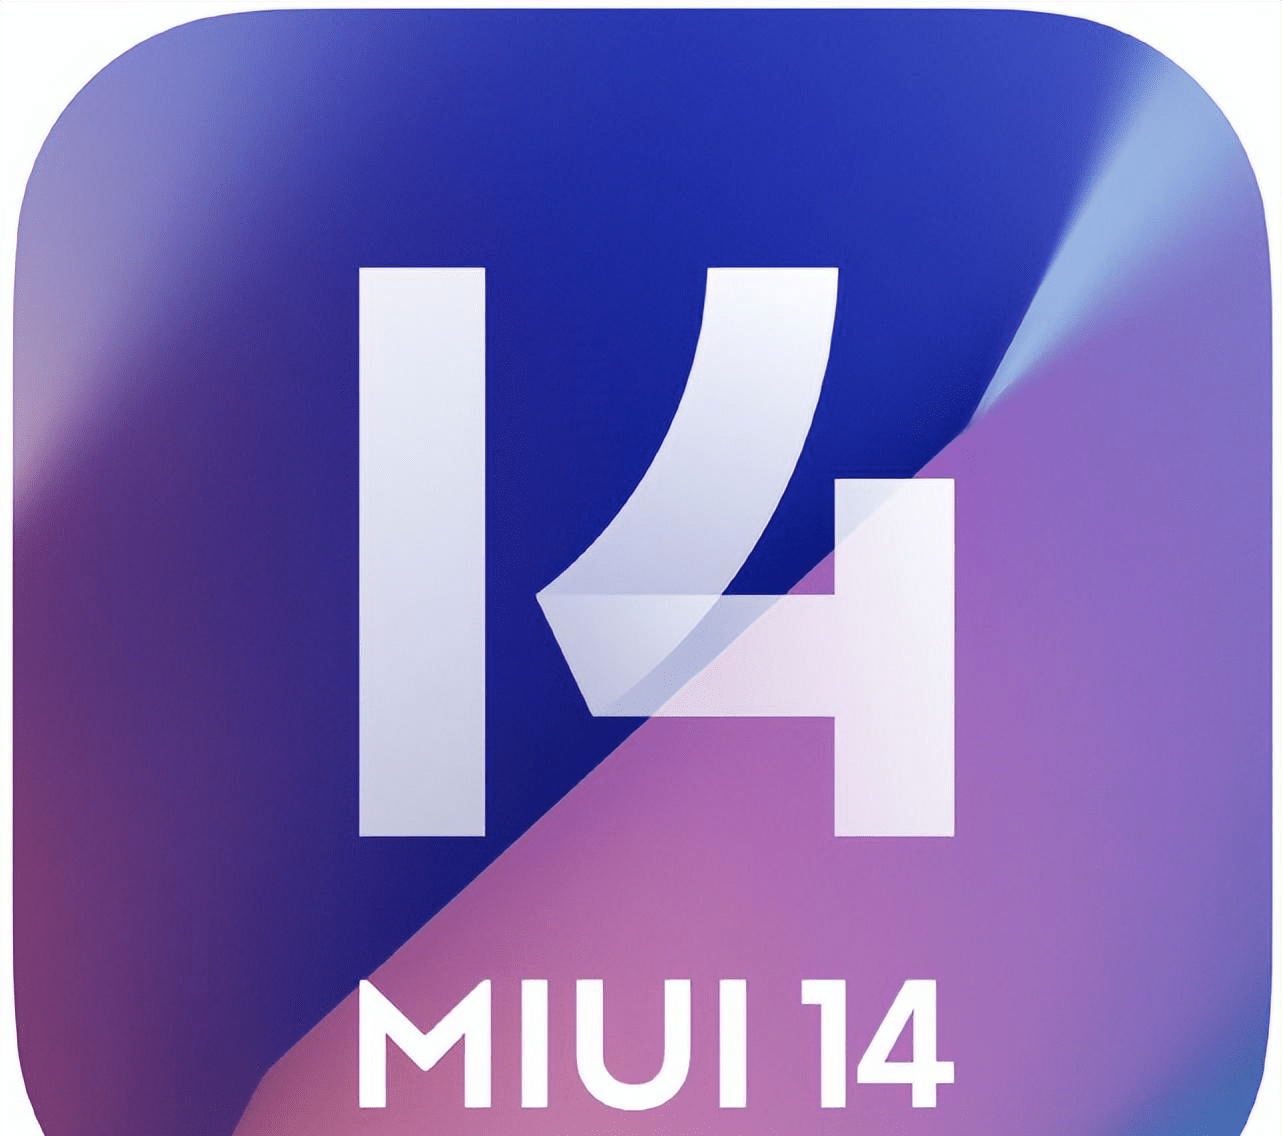 华为手机内存固件清理
:MIUI14明天推出，新增光子引擎流畅提升88%媲美iOS系统，固件减小